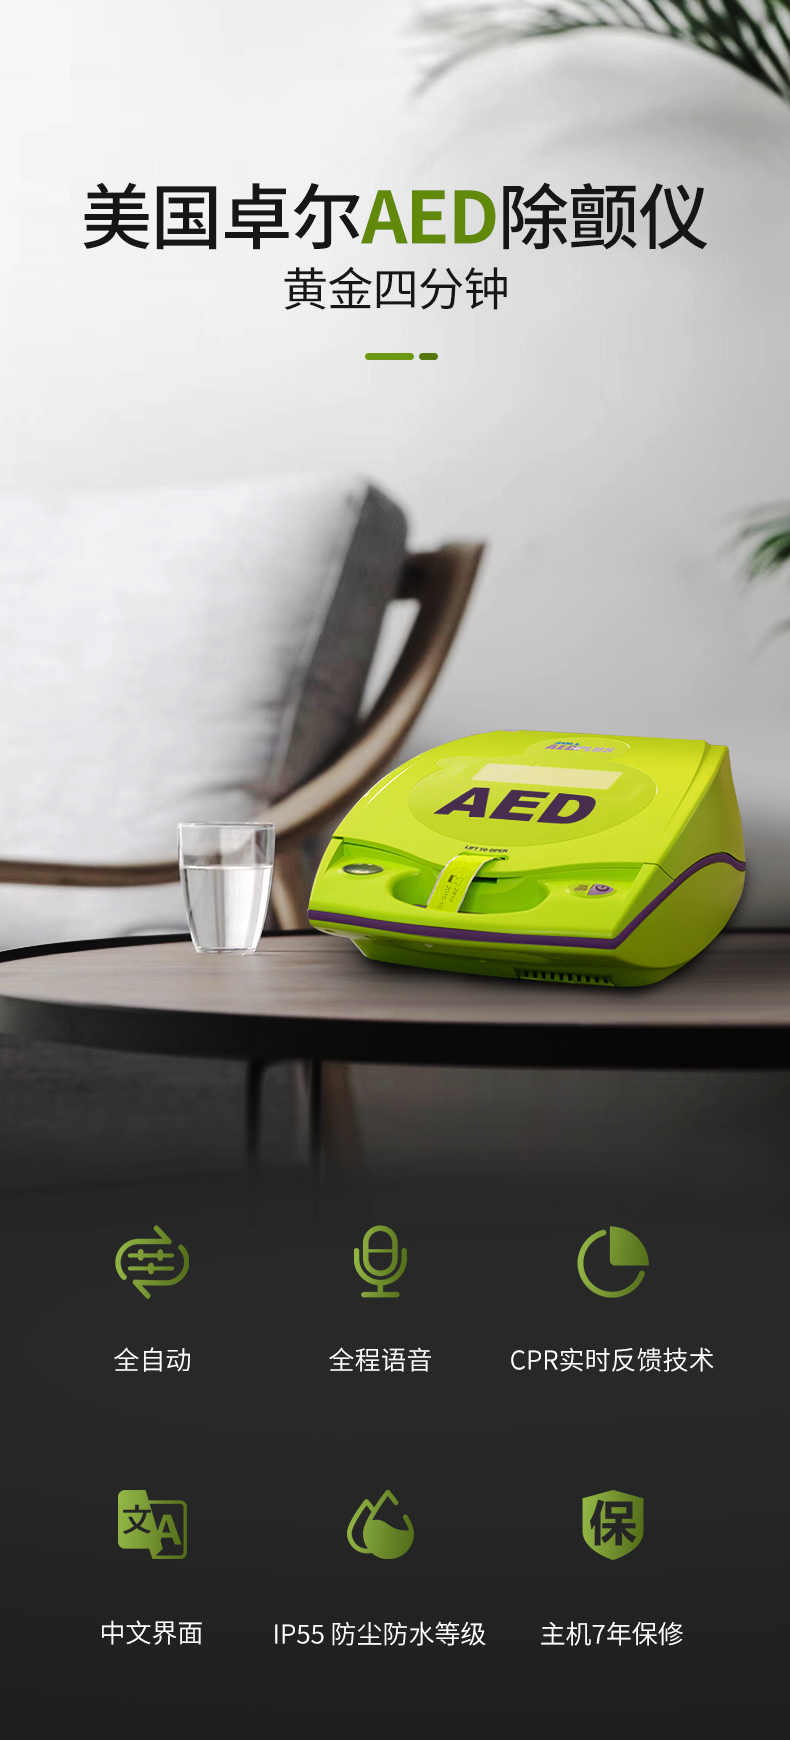 卓爾AED除顫儀AED.jpg